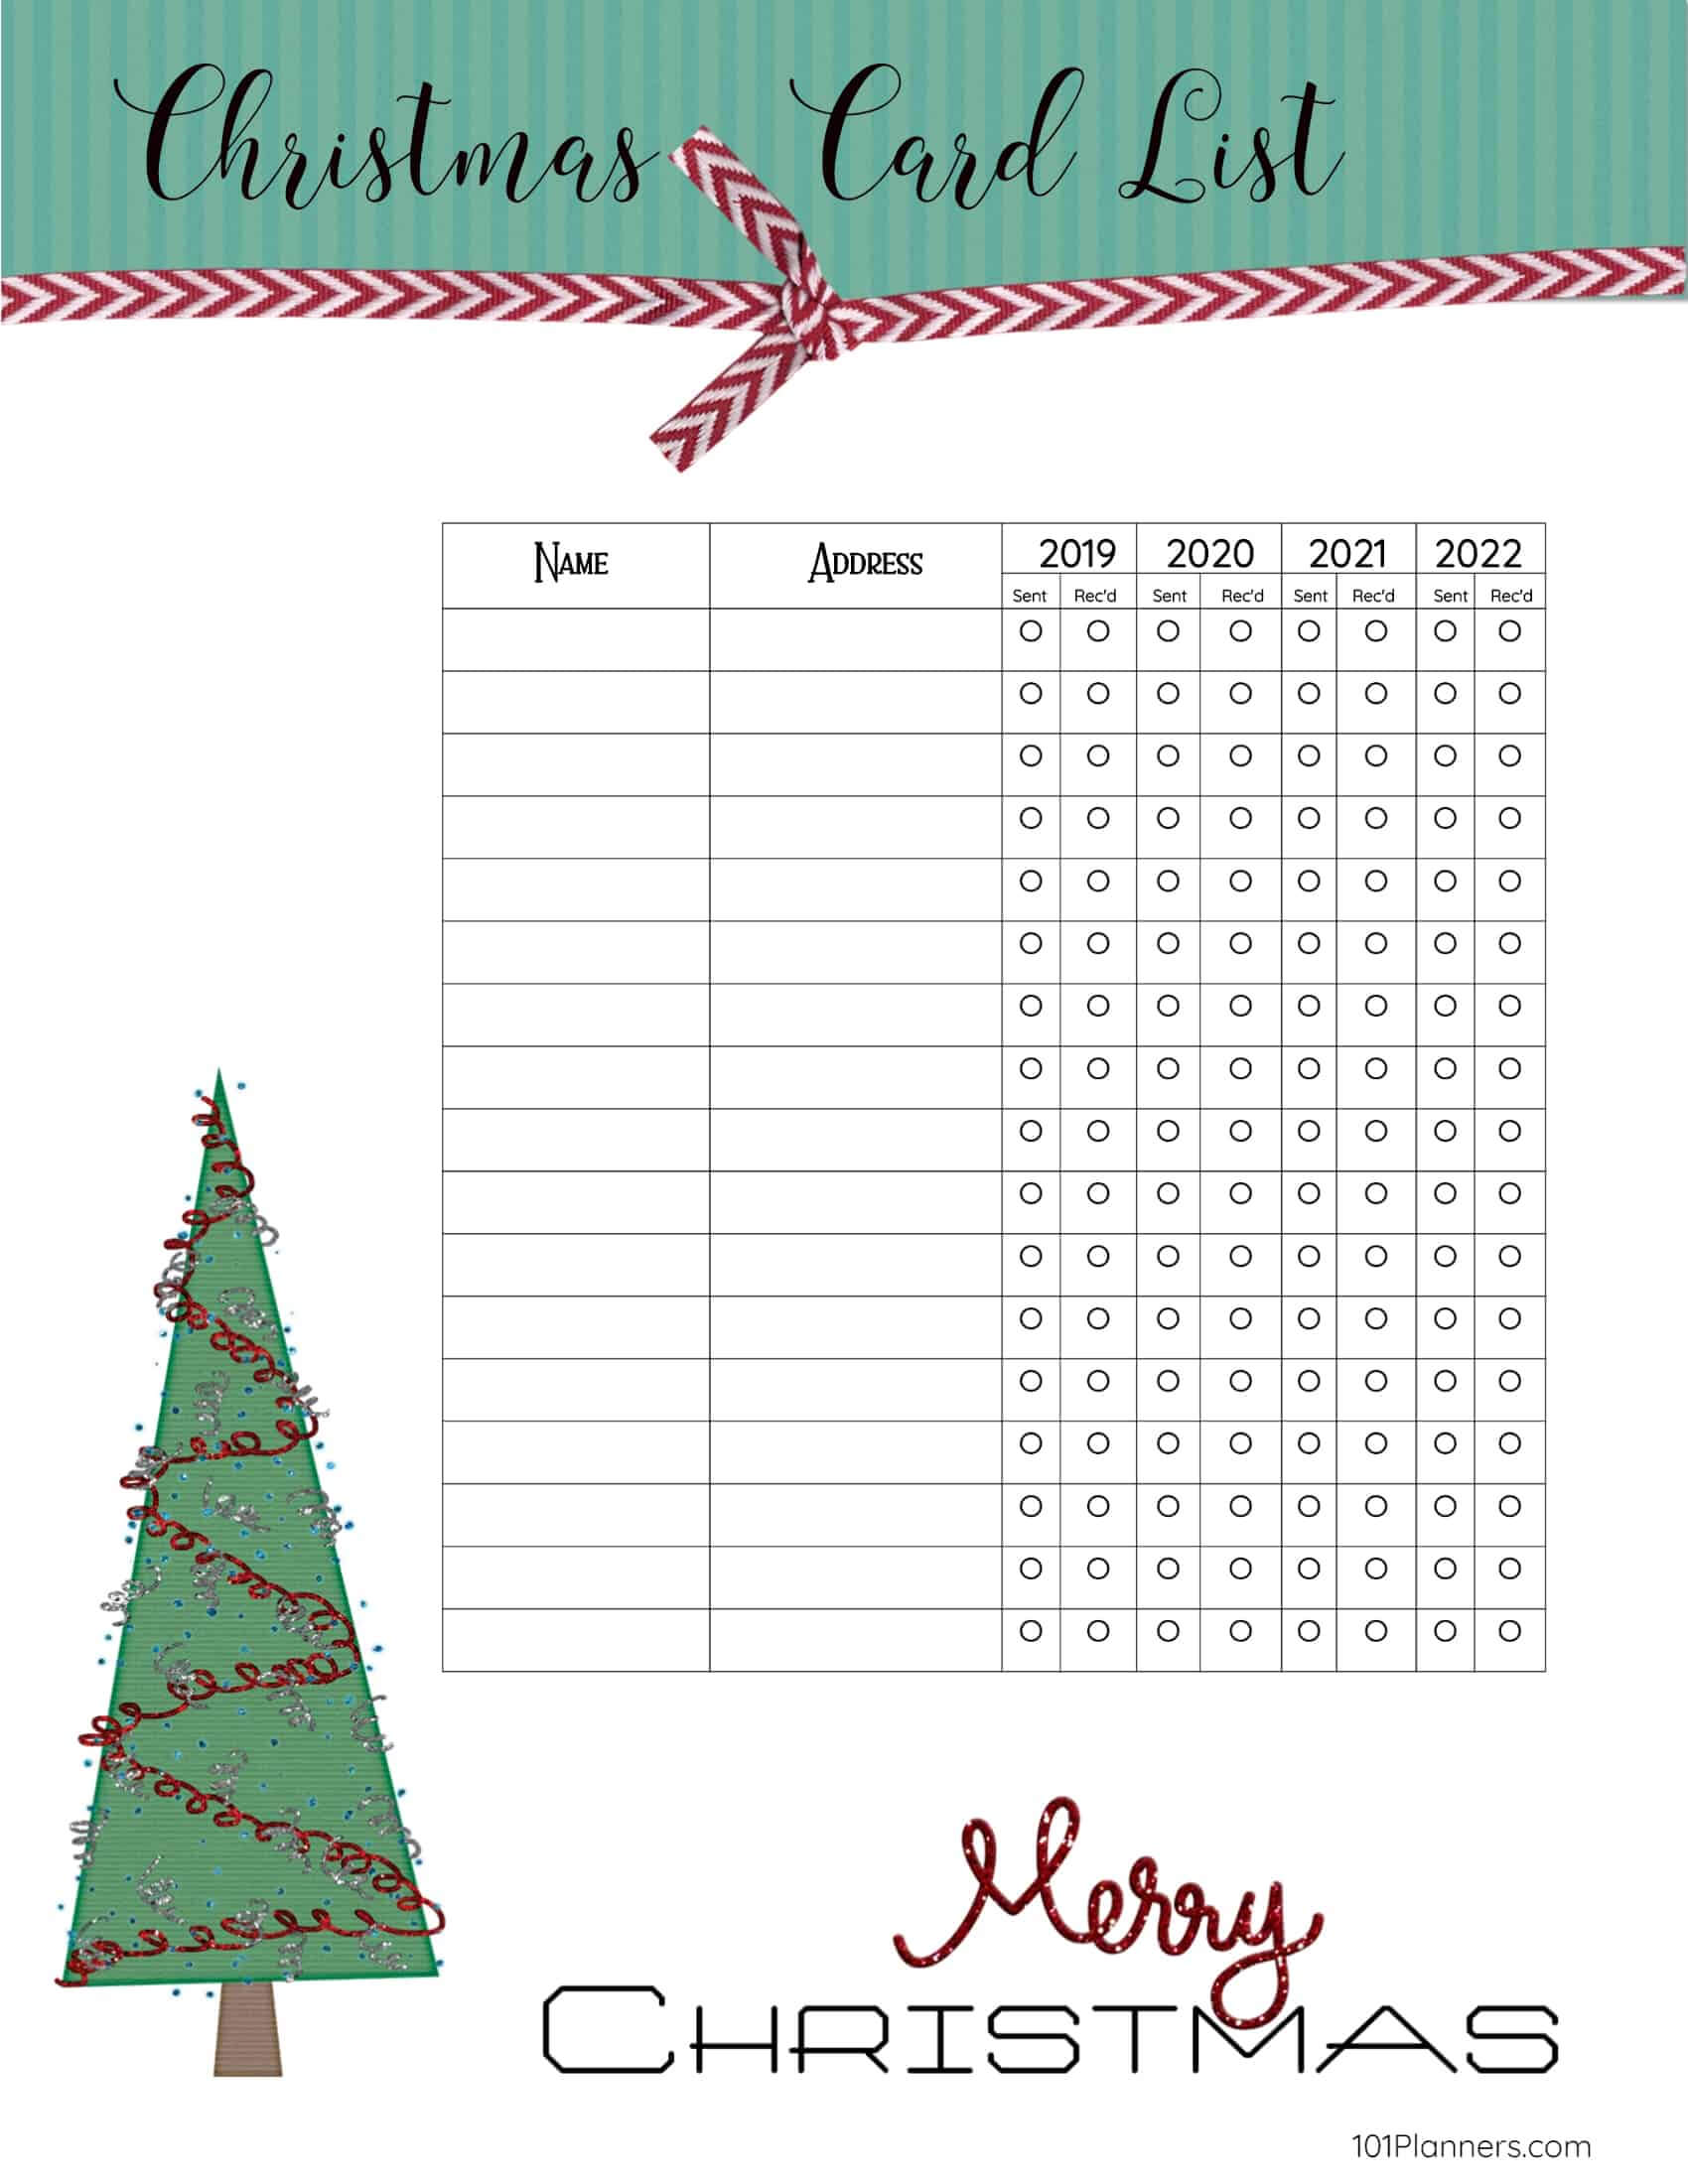 Free Printable Christmas Gift List Template Inside Christmas Card List Template